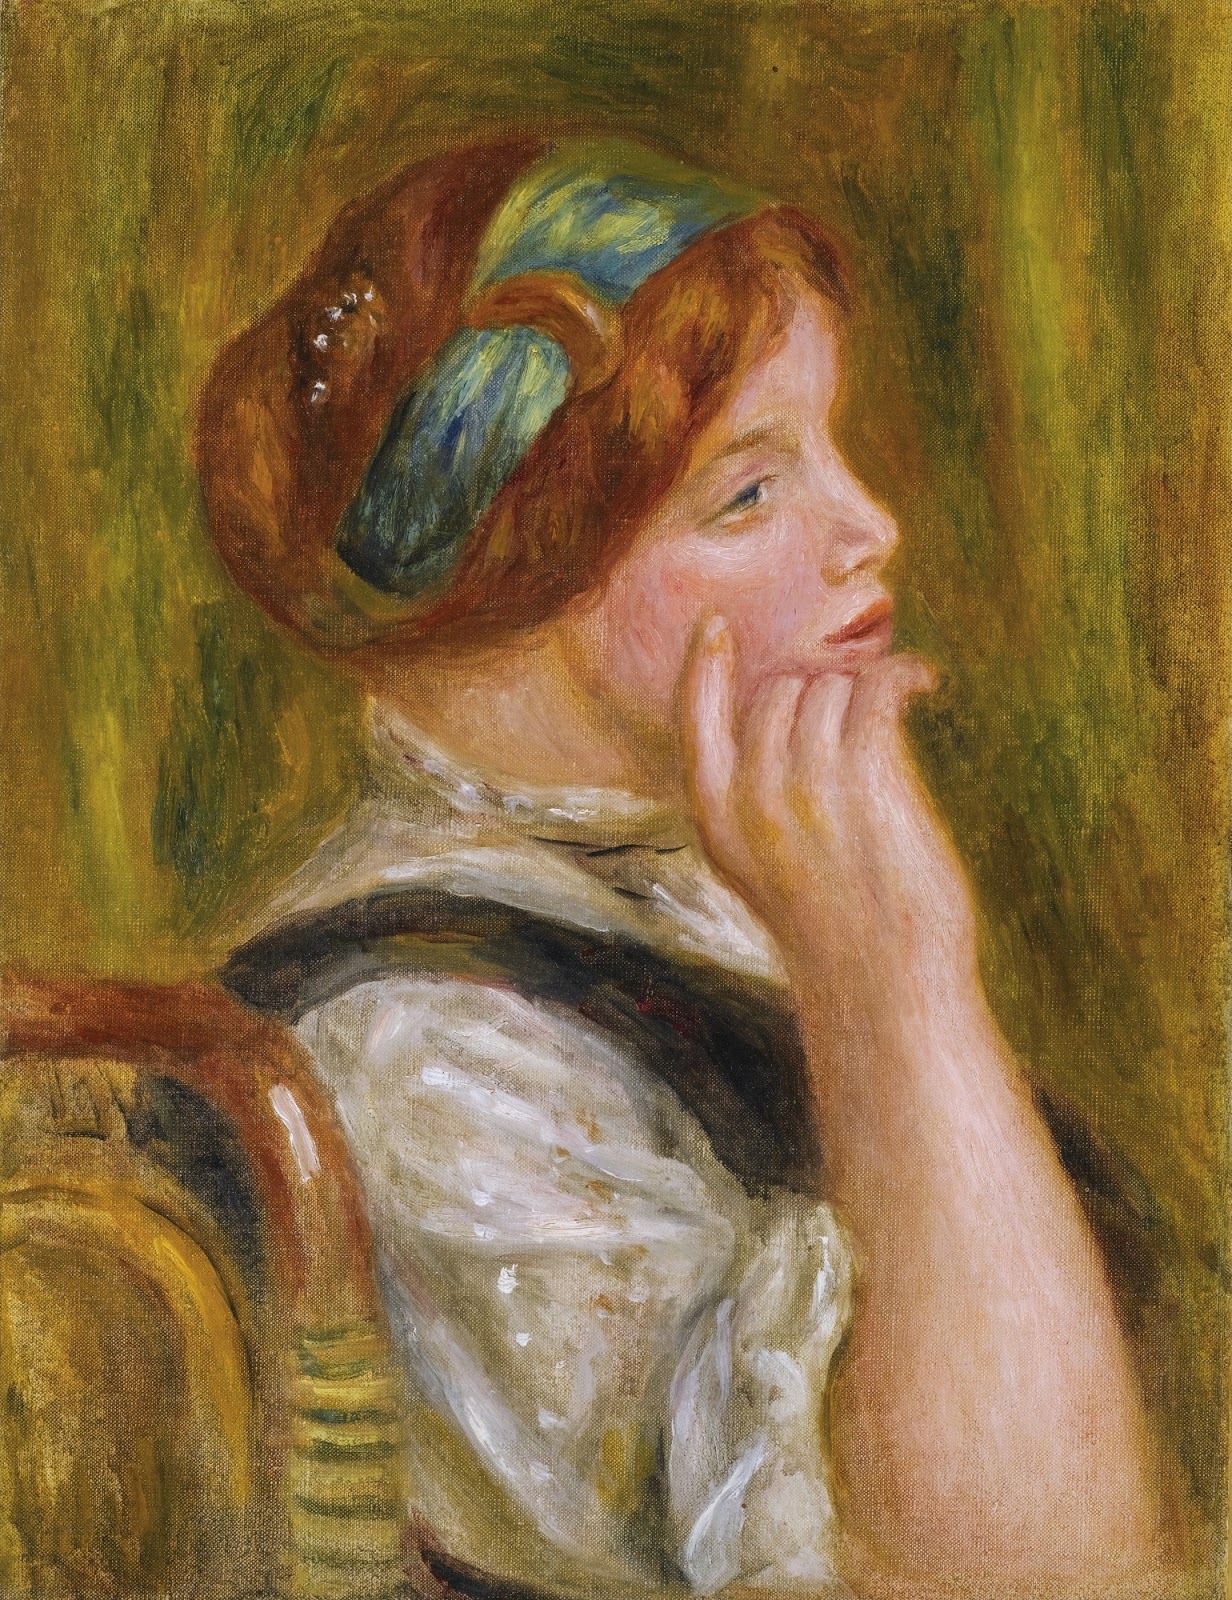 Pierre+Auguste+Renoir-1841-1-19 (850).jpg